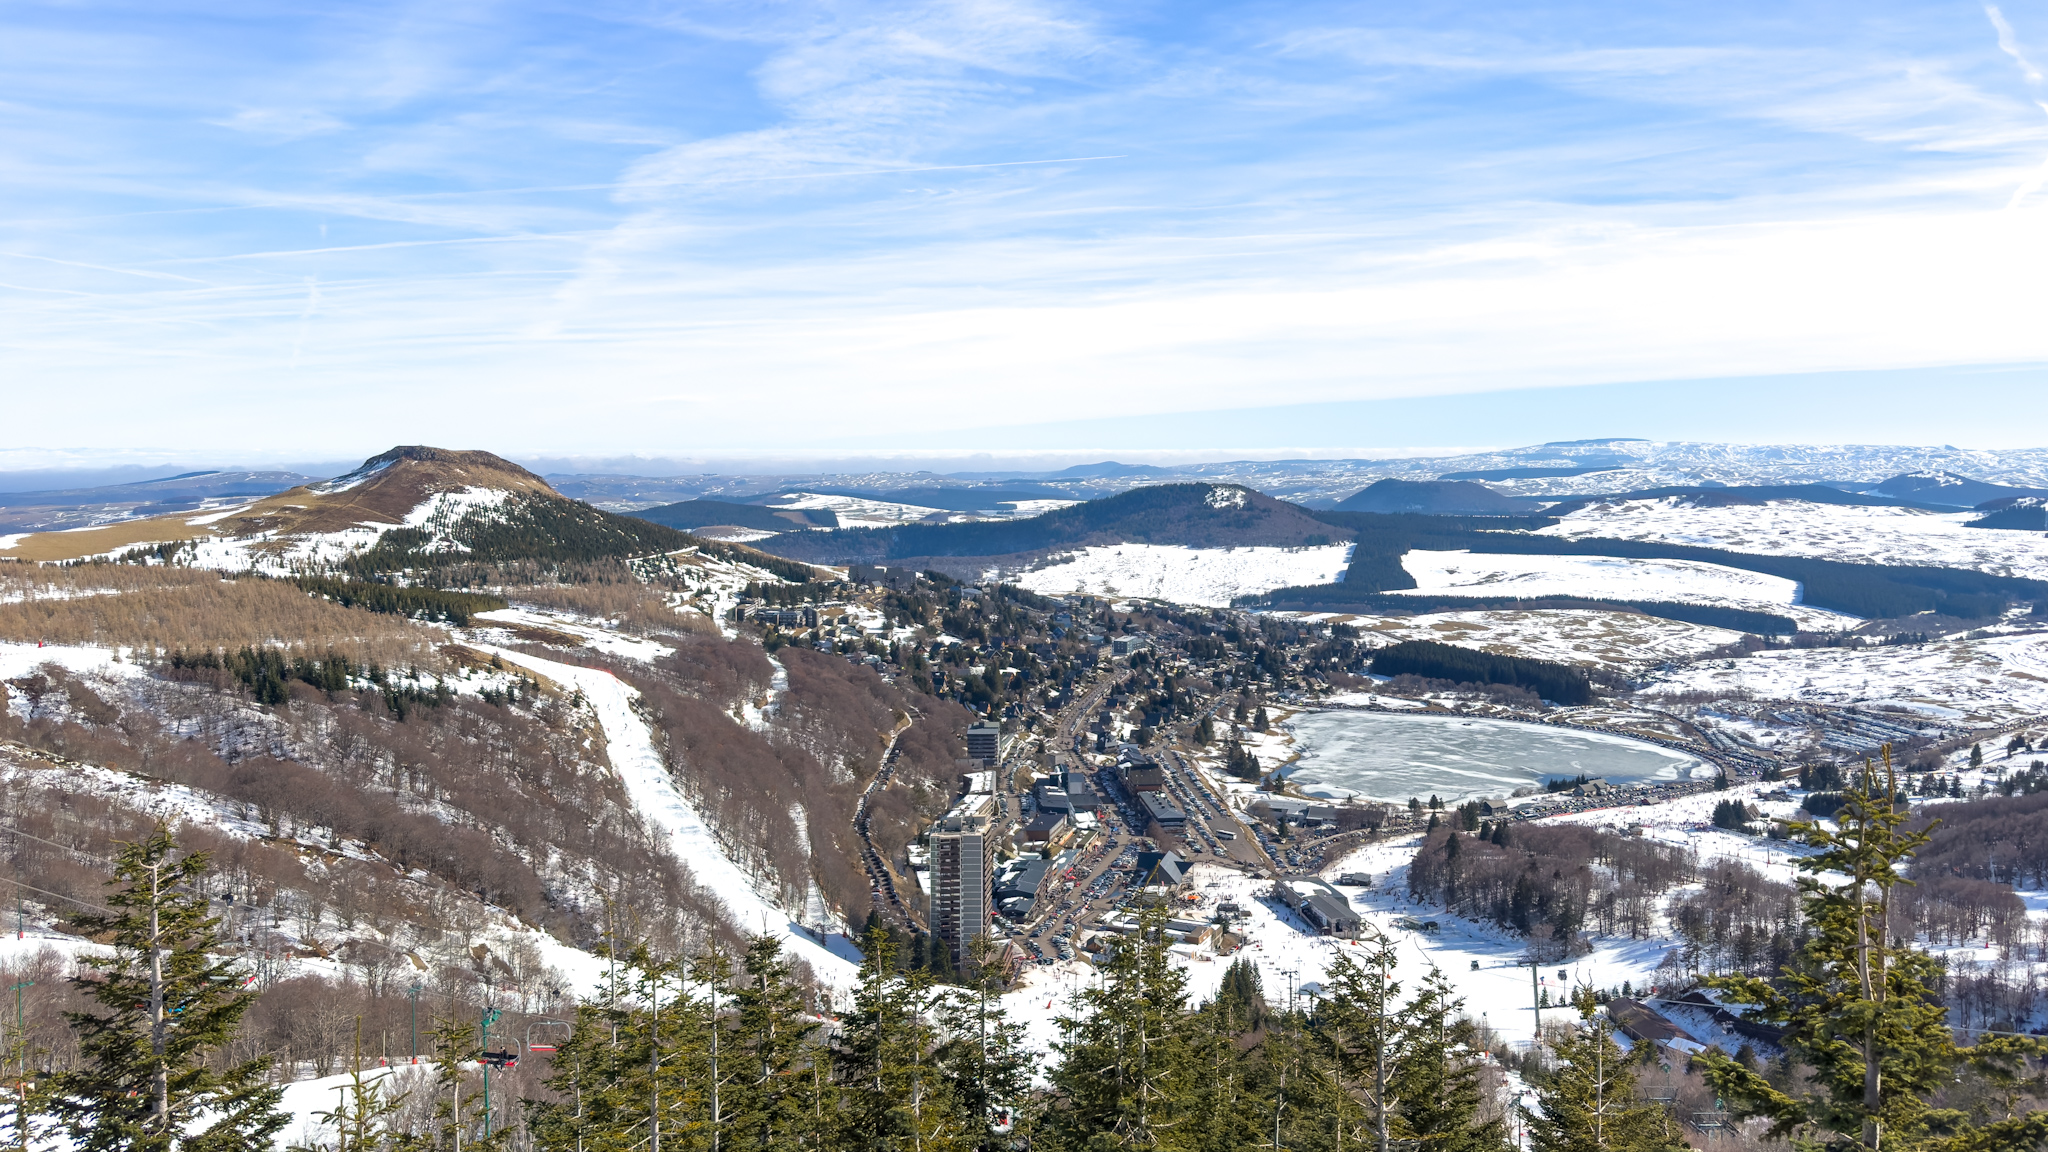 Super Besse winter sports resort, panoramic view